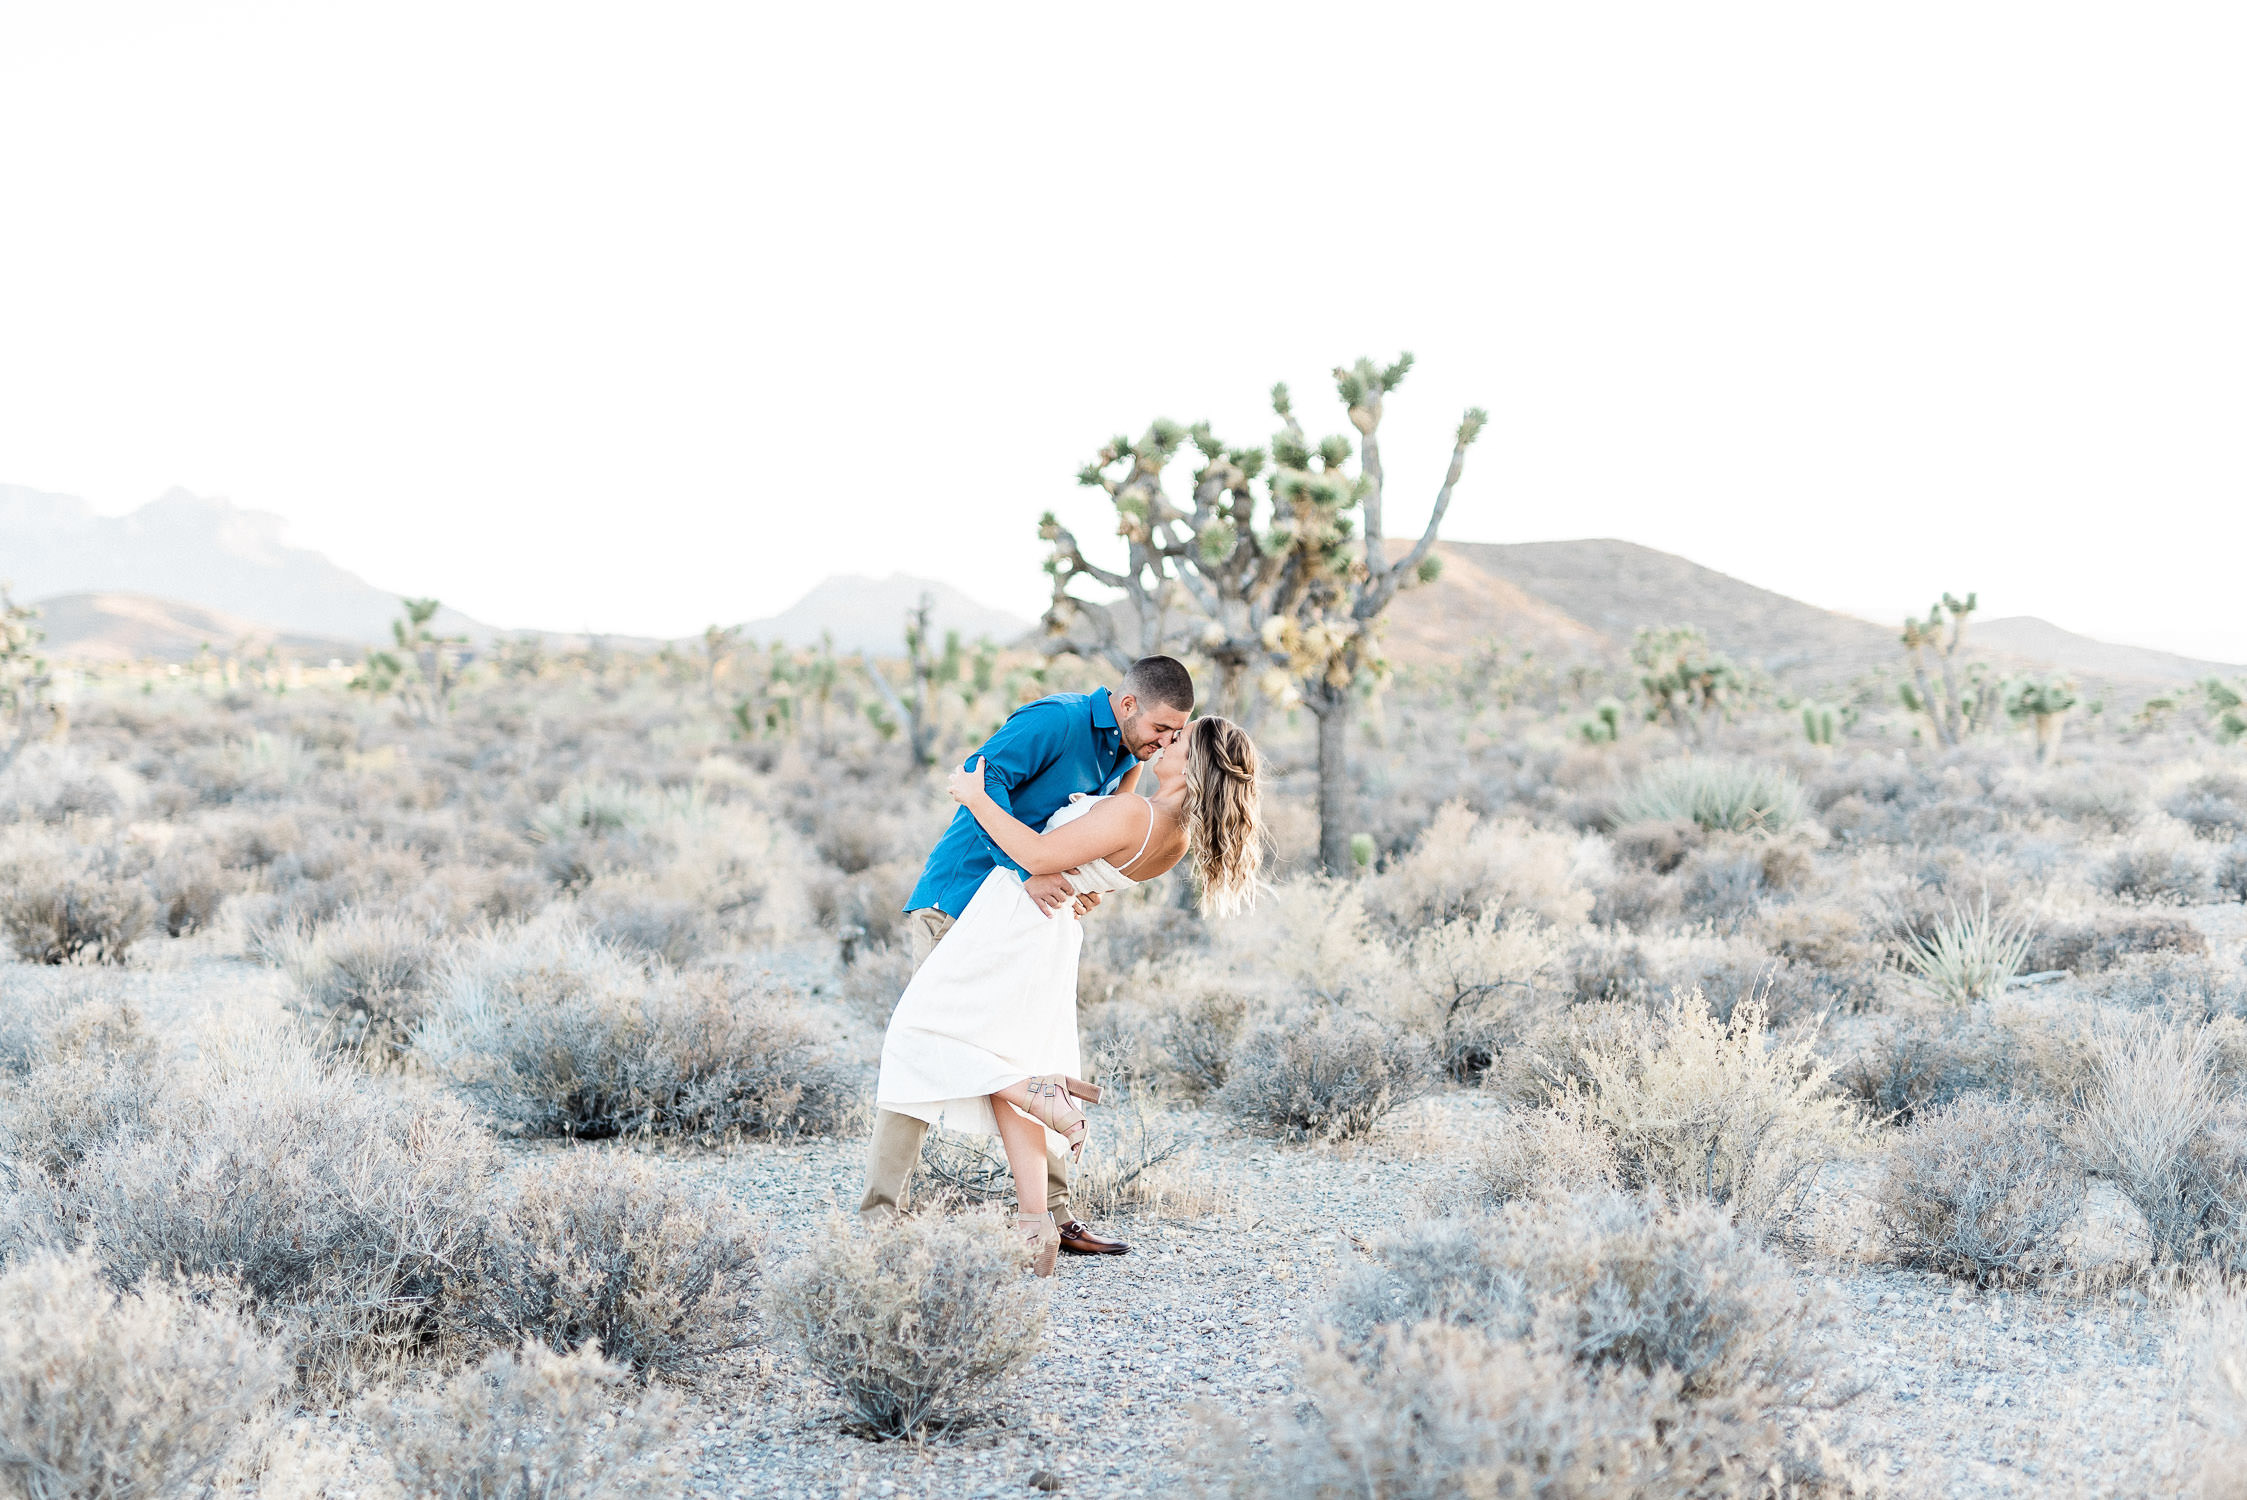 Kristen Marie Weddings + Portraits | Las Vegas Engagement Photographer